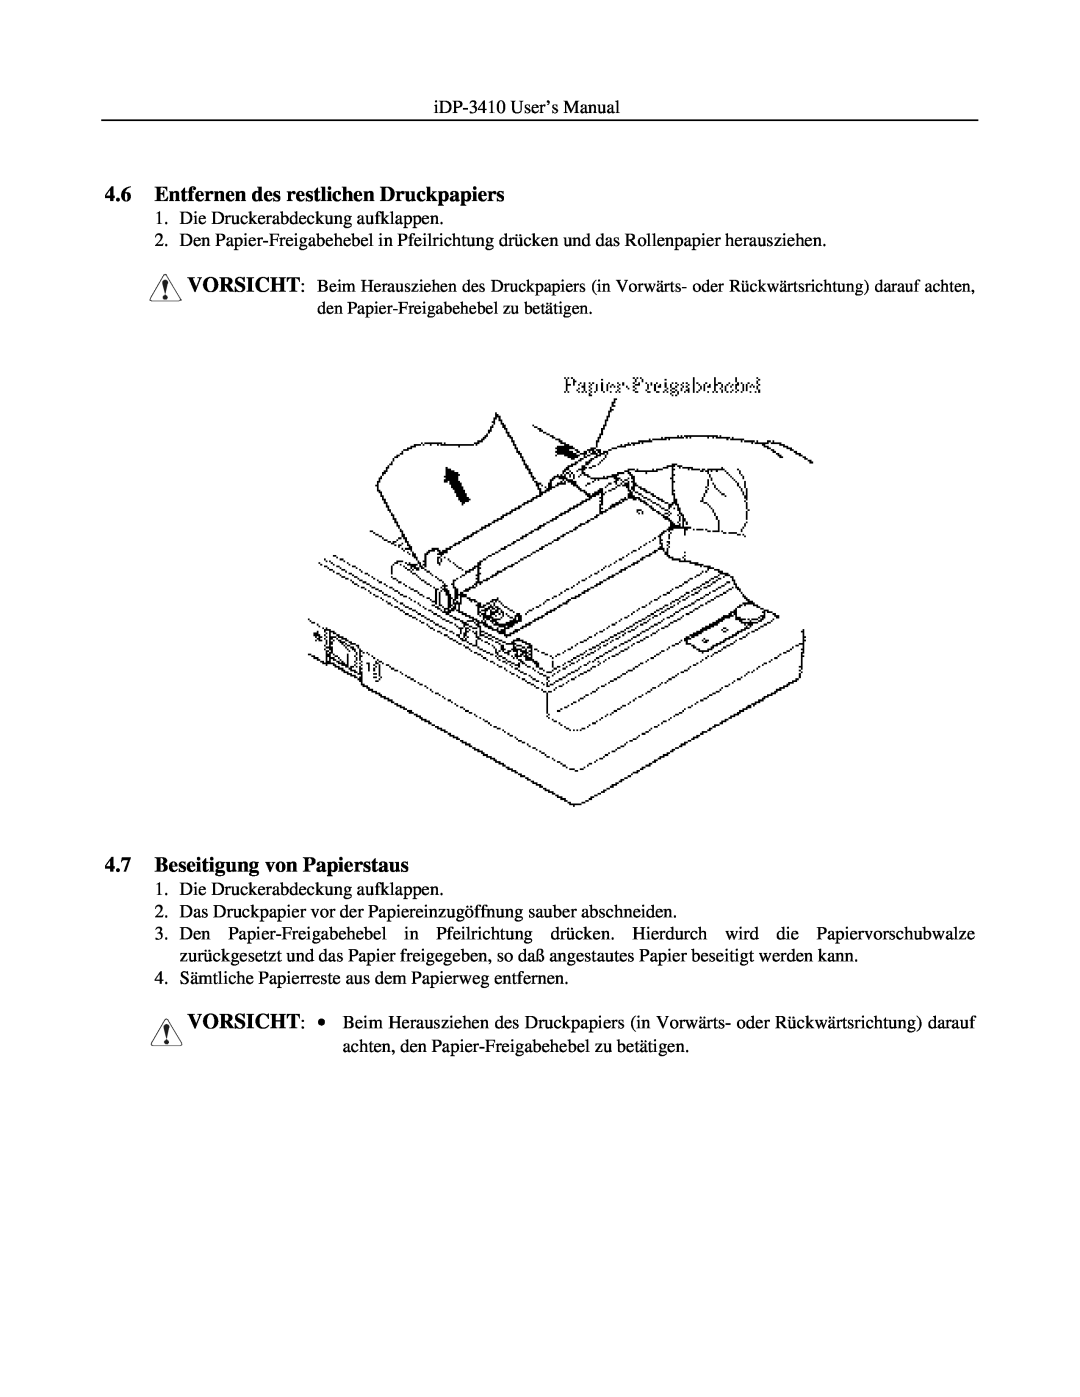 Addlogix iDP-3410 user manual Entfernen des restlichen Druckpapiers, Beseitigung von Papierstaus 